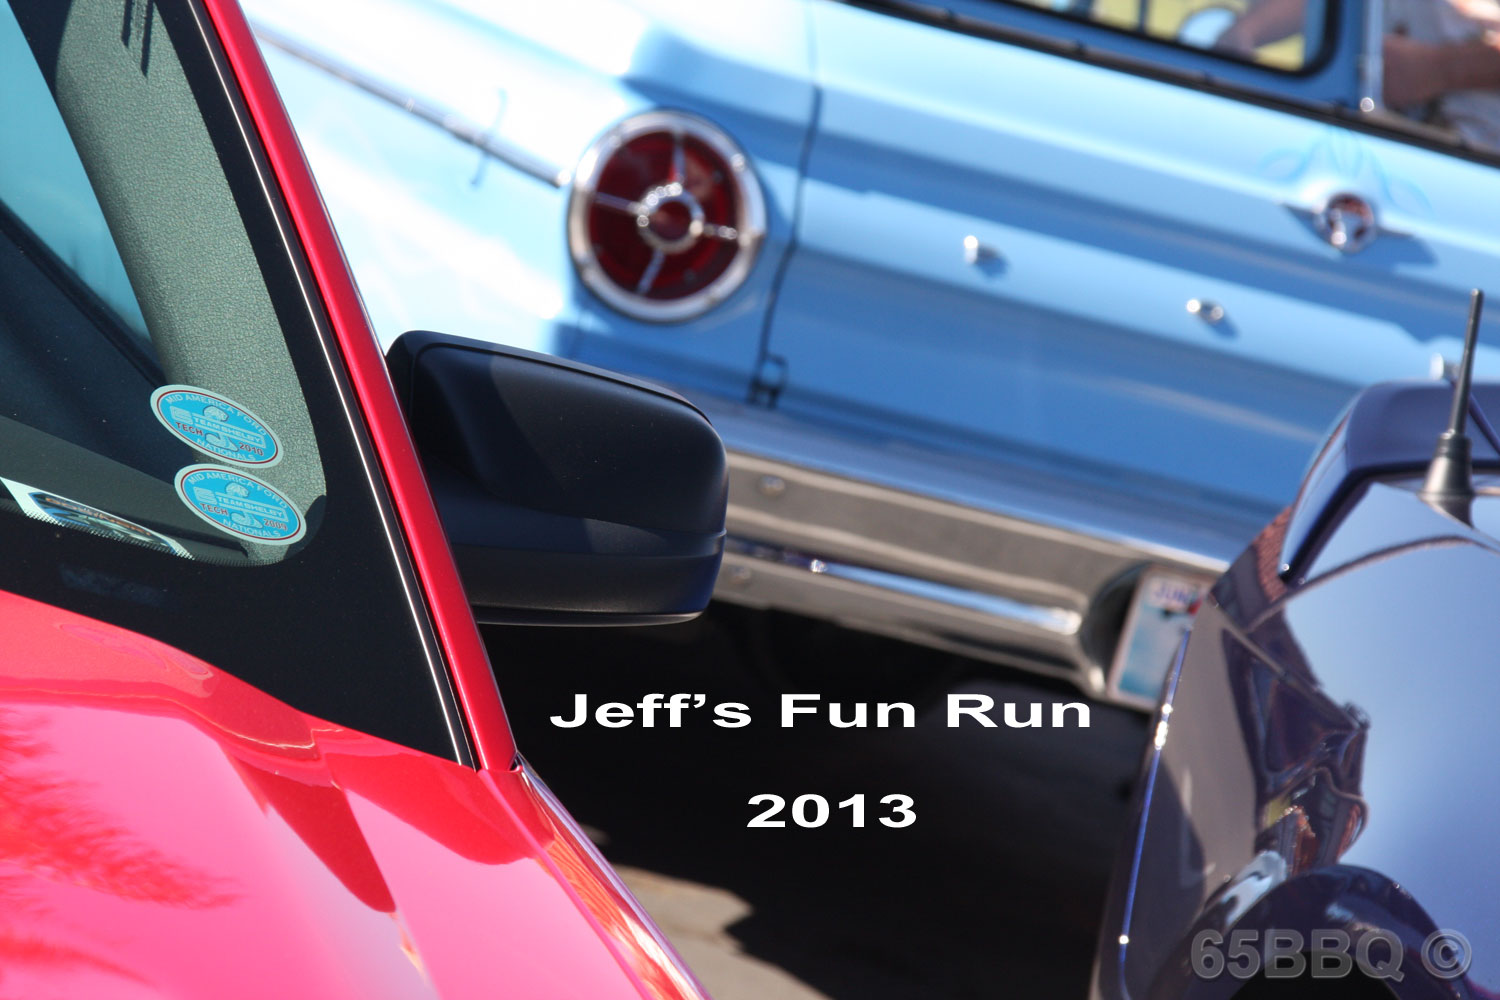 jeffs-fun-run-2013-65bbq-1.jpg